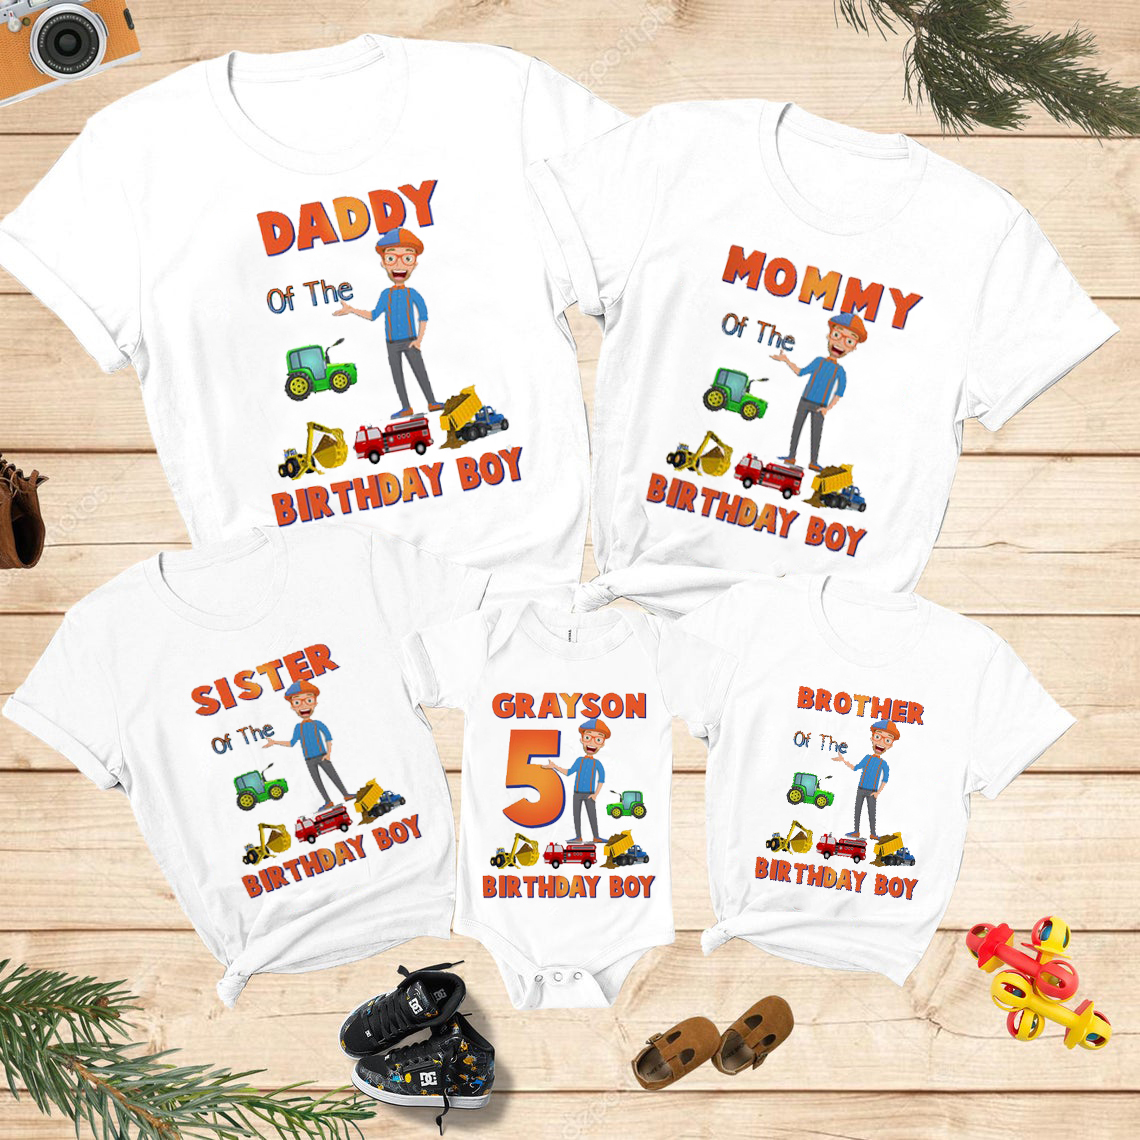 Personalized Blippi Birthday Shirt, Blippi Party, Customized Birthday Blippi Theme Party Shirts, Family Matching Blippi Shirts